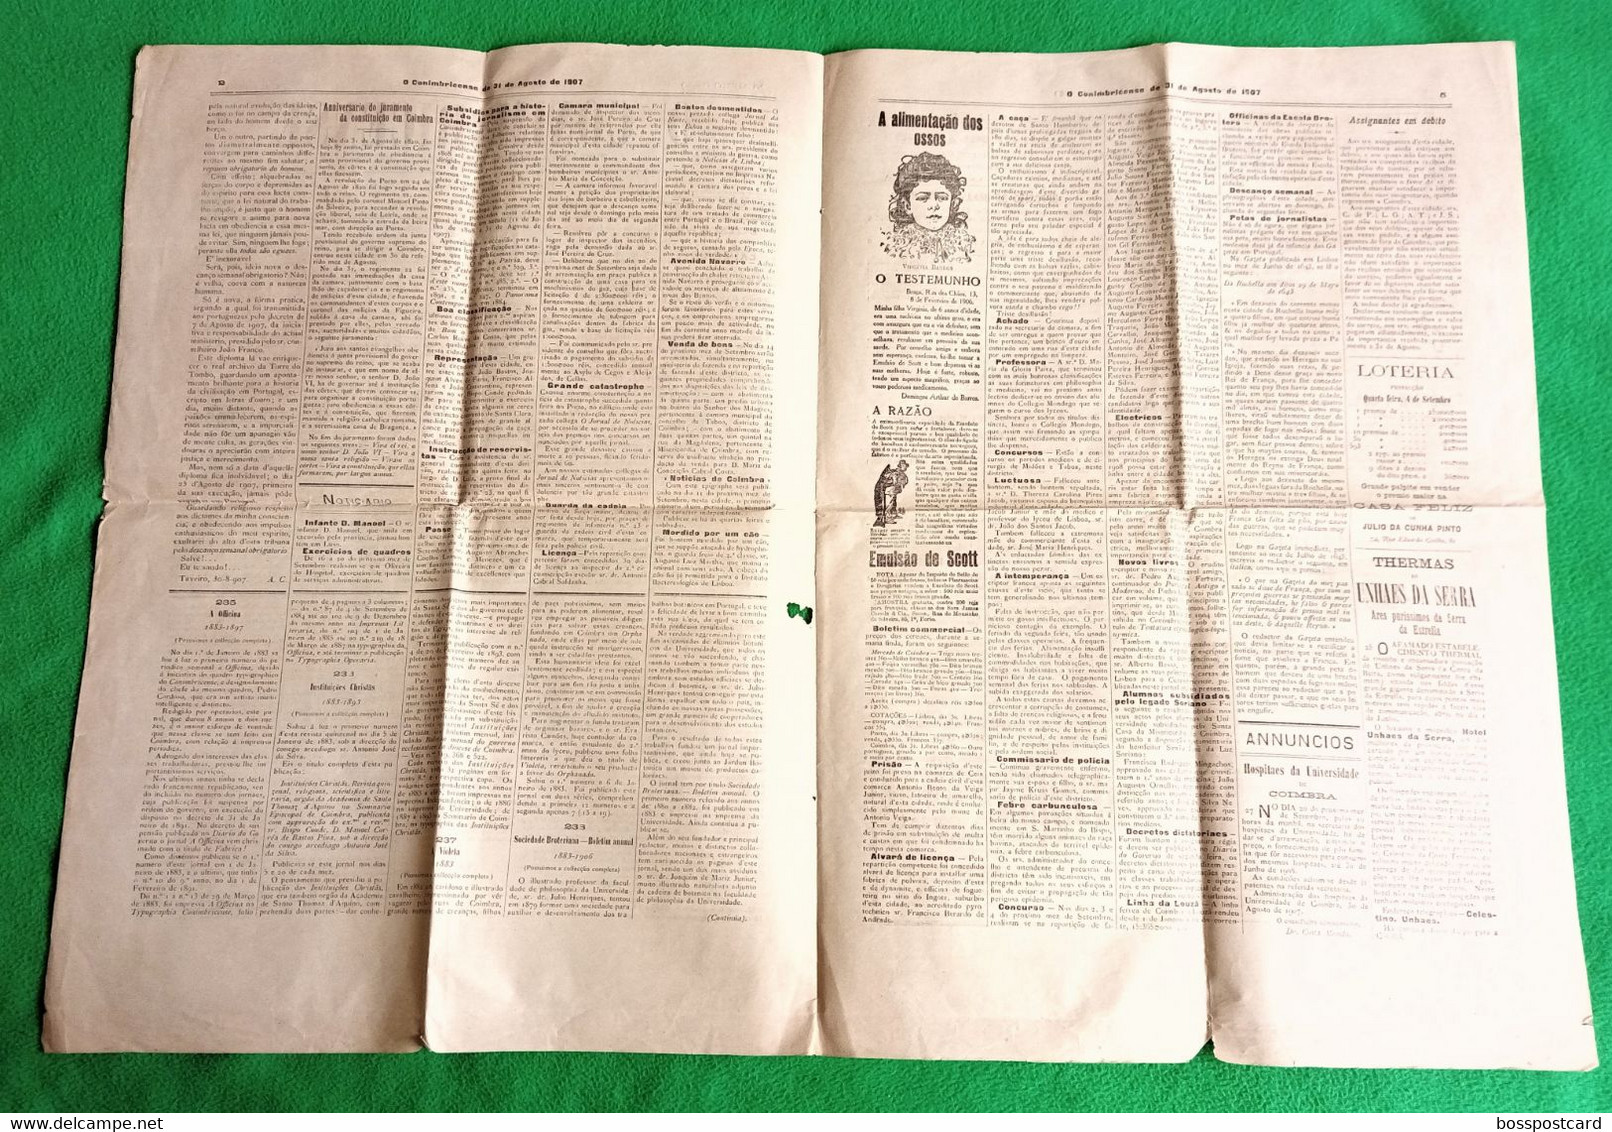 Coimbra - Jornal O Conibricense Nº 6230, 31 De Agosto De 1907 - Imprensa - Portugal - Algemene Informatie